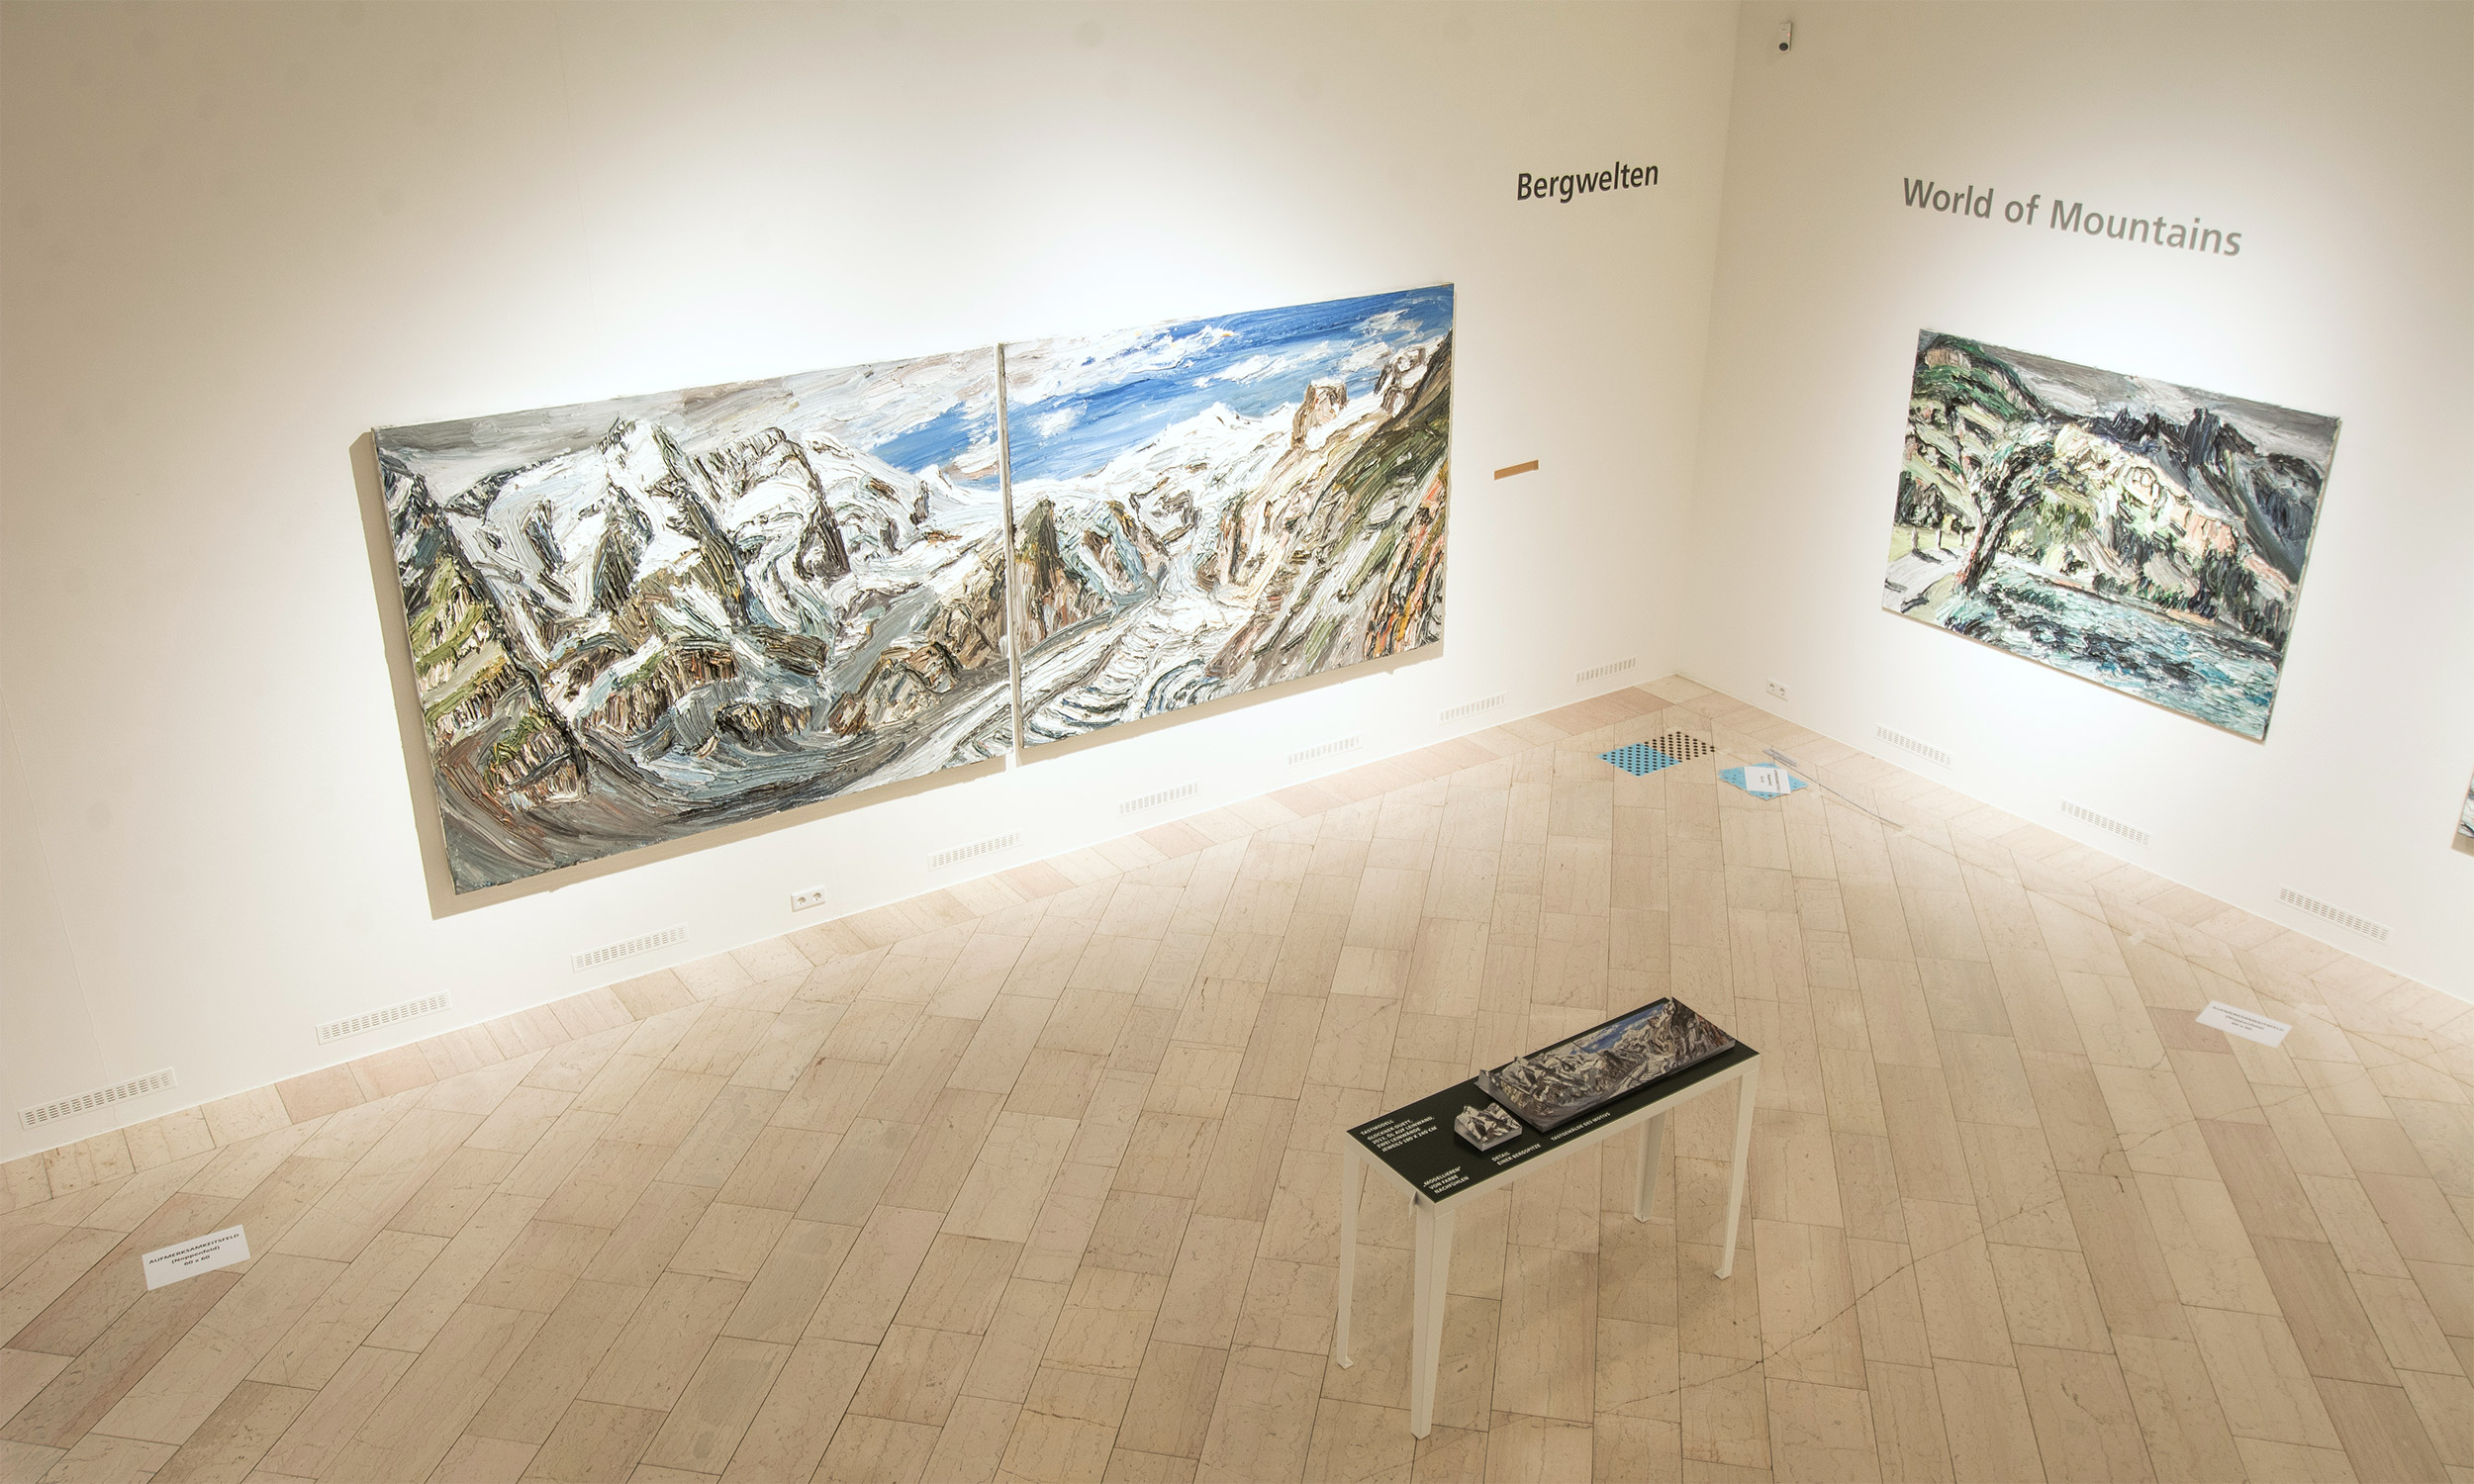 Blick von oben in eine Ecke der Ausstellungshalle. An der linken Wand das sehr große, zweiteilige Gemälde „Bergwelten“. Davor auf einem Tisch das Tastmodell zum Gemälde.